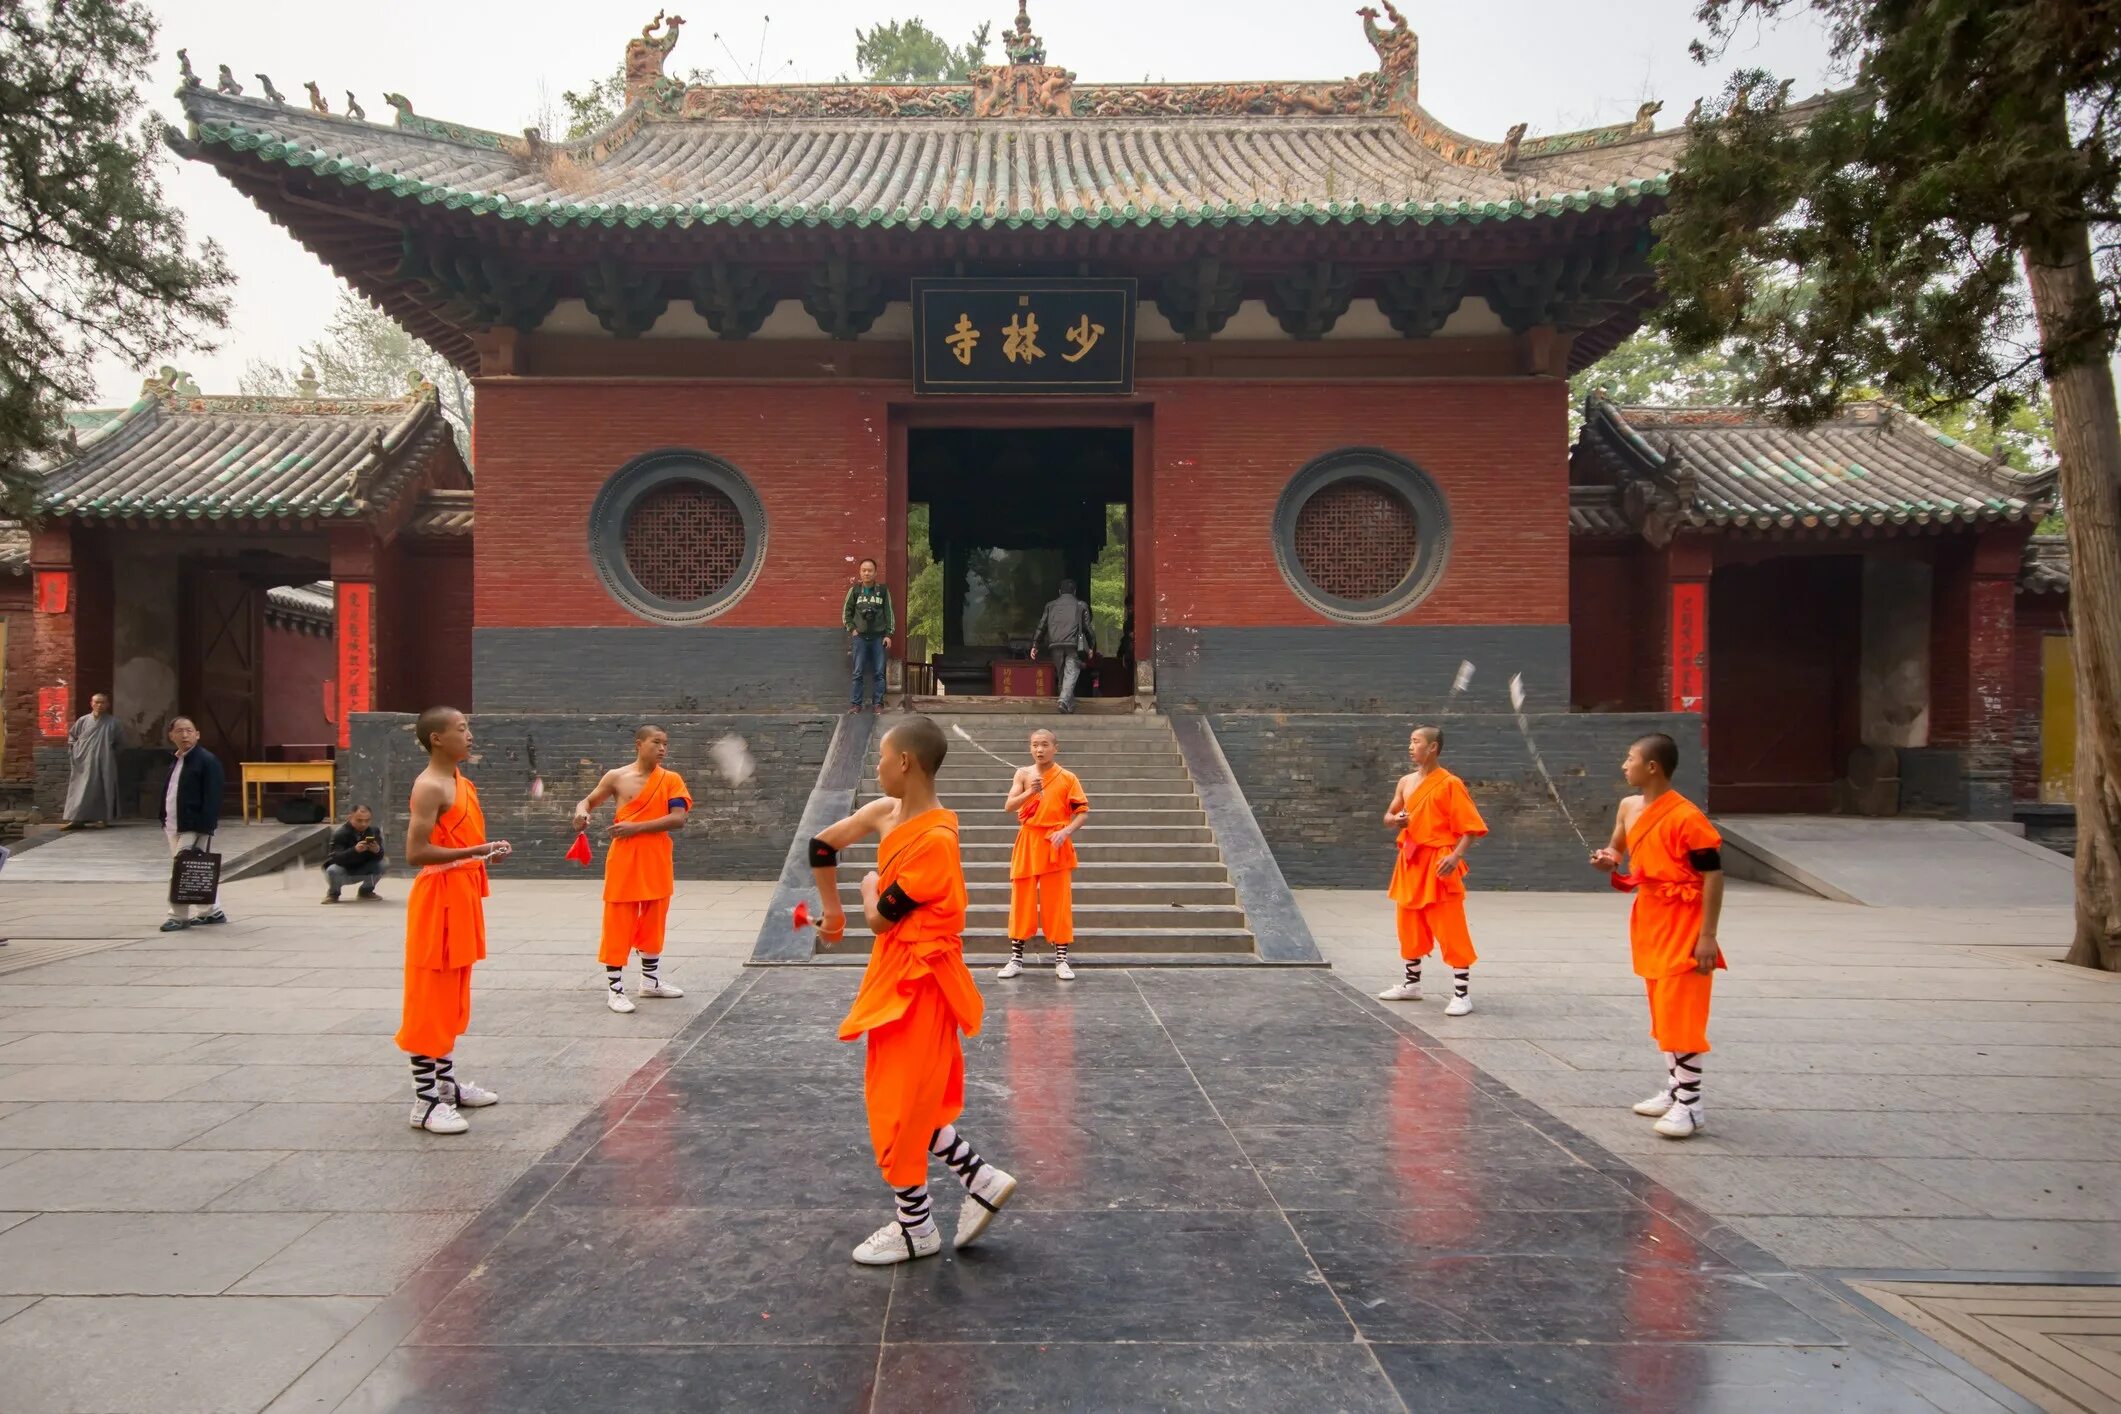 Shaolin temple. Монастырь Шаолинь Хэнань. Китай храм Шаолинь. Кунг-фу монастырь Шаолинь. Буддийский монастырь Шаолинь.